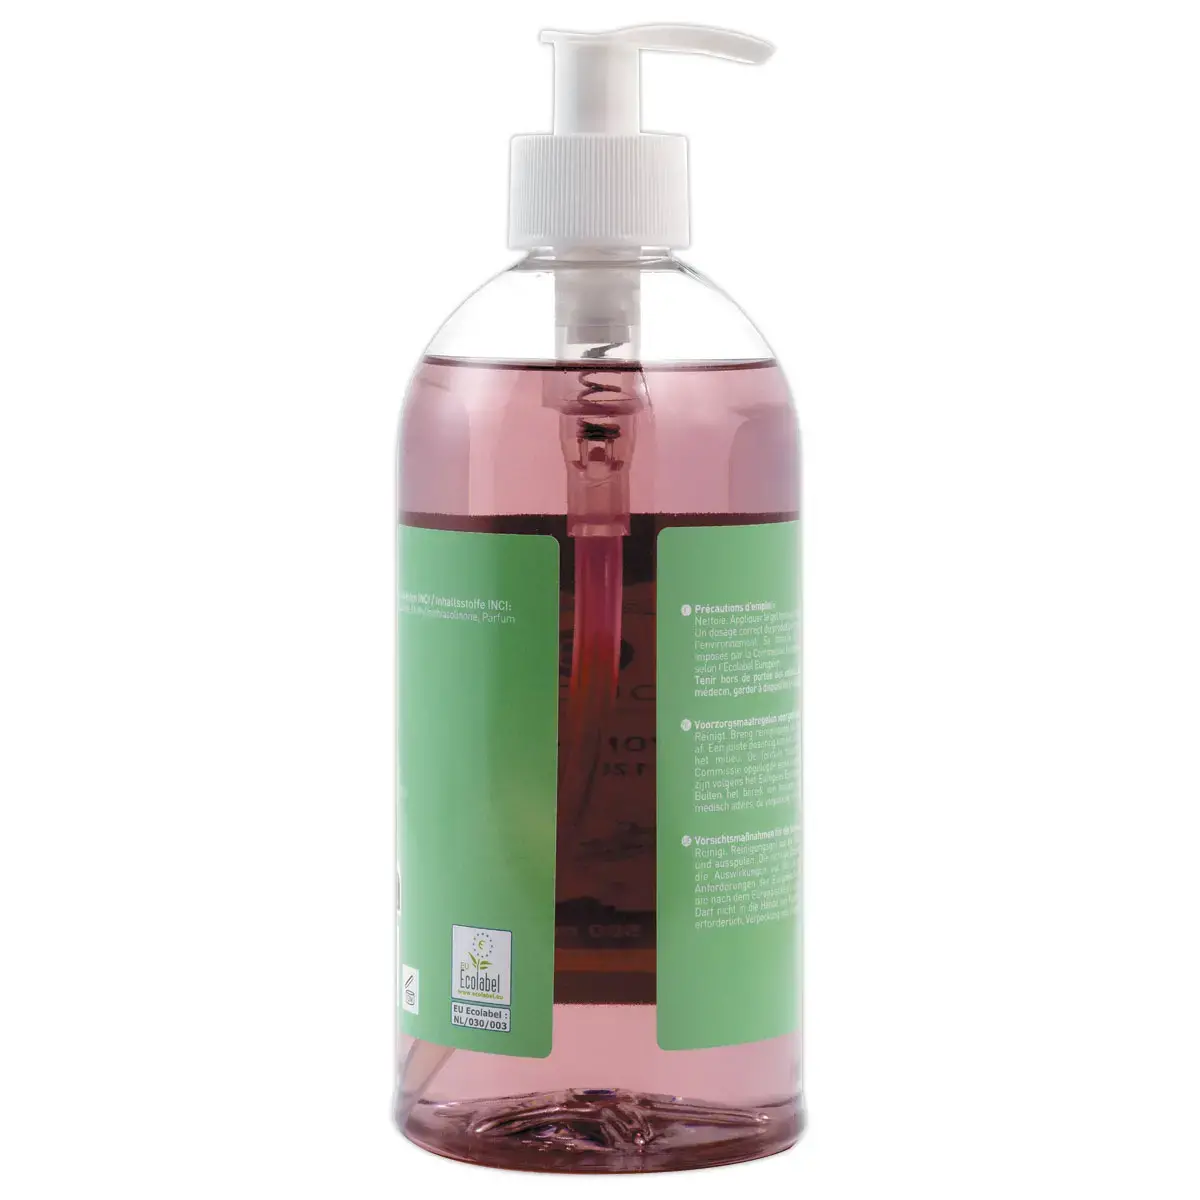 Gel nettoyant pour les mains - 500 ml - Parfum Figue - FIDUCIAL OFFICE SOLUTIONS photo du produit